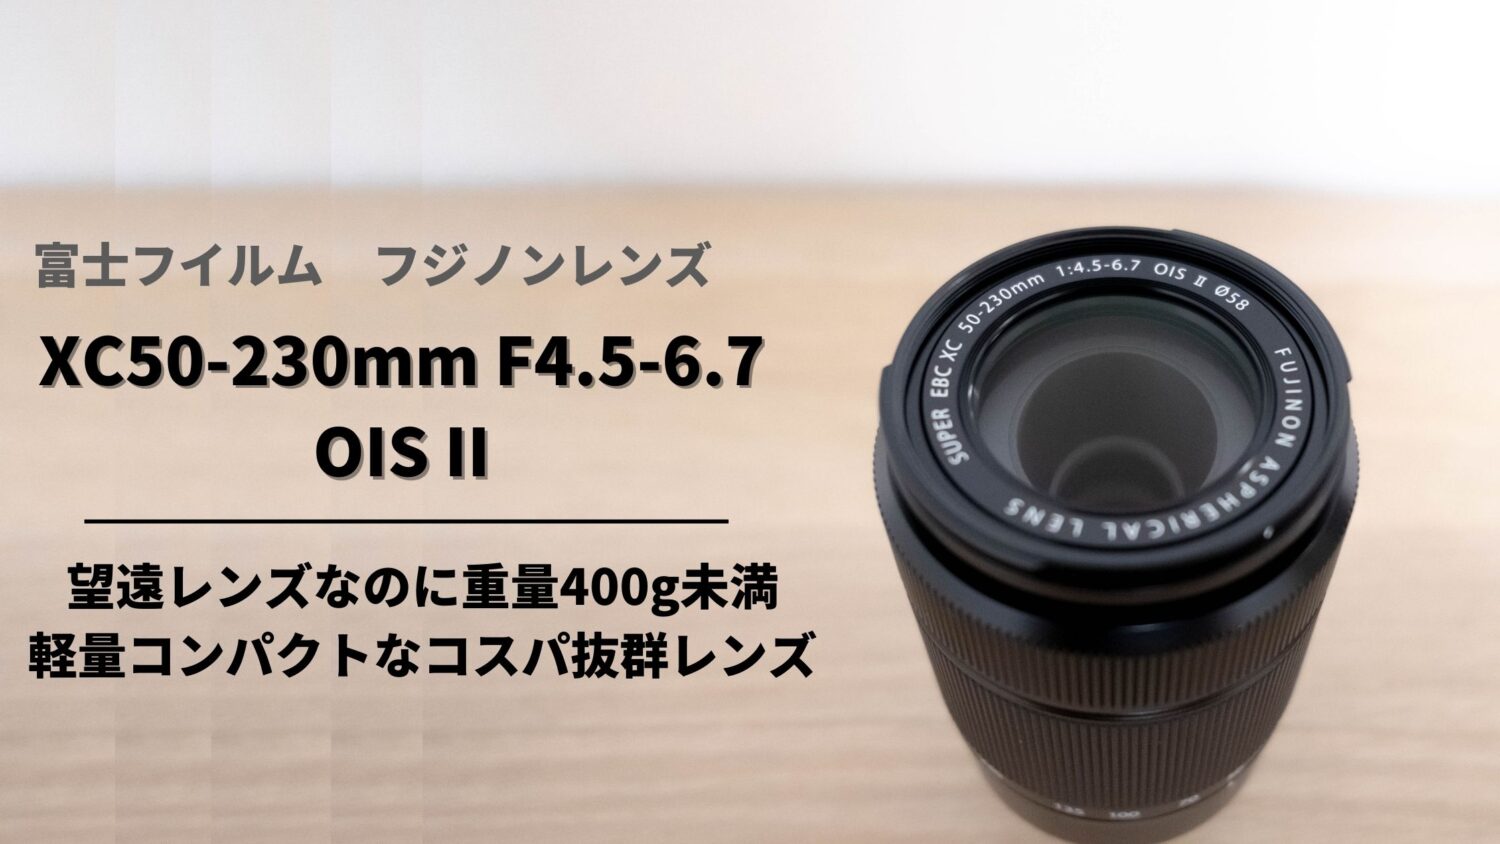 カメラ レンズ(ズーム) コスパ最強】フジノンレンズ XC50-230mmF4.5-6.7 OIS II購入レビュー 